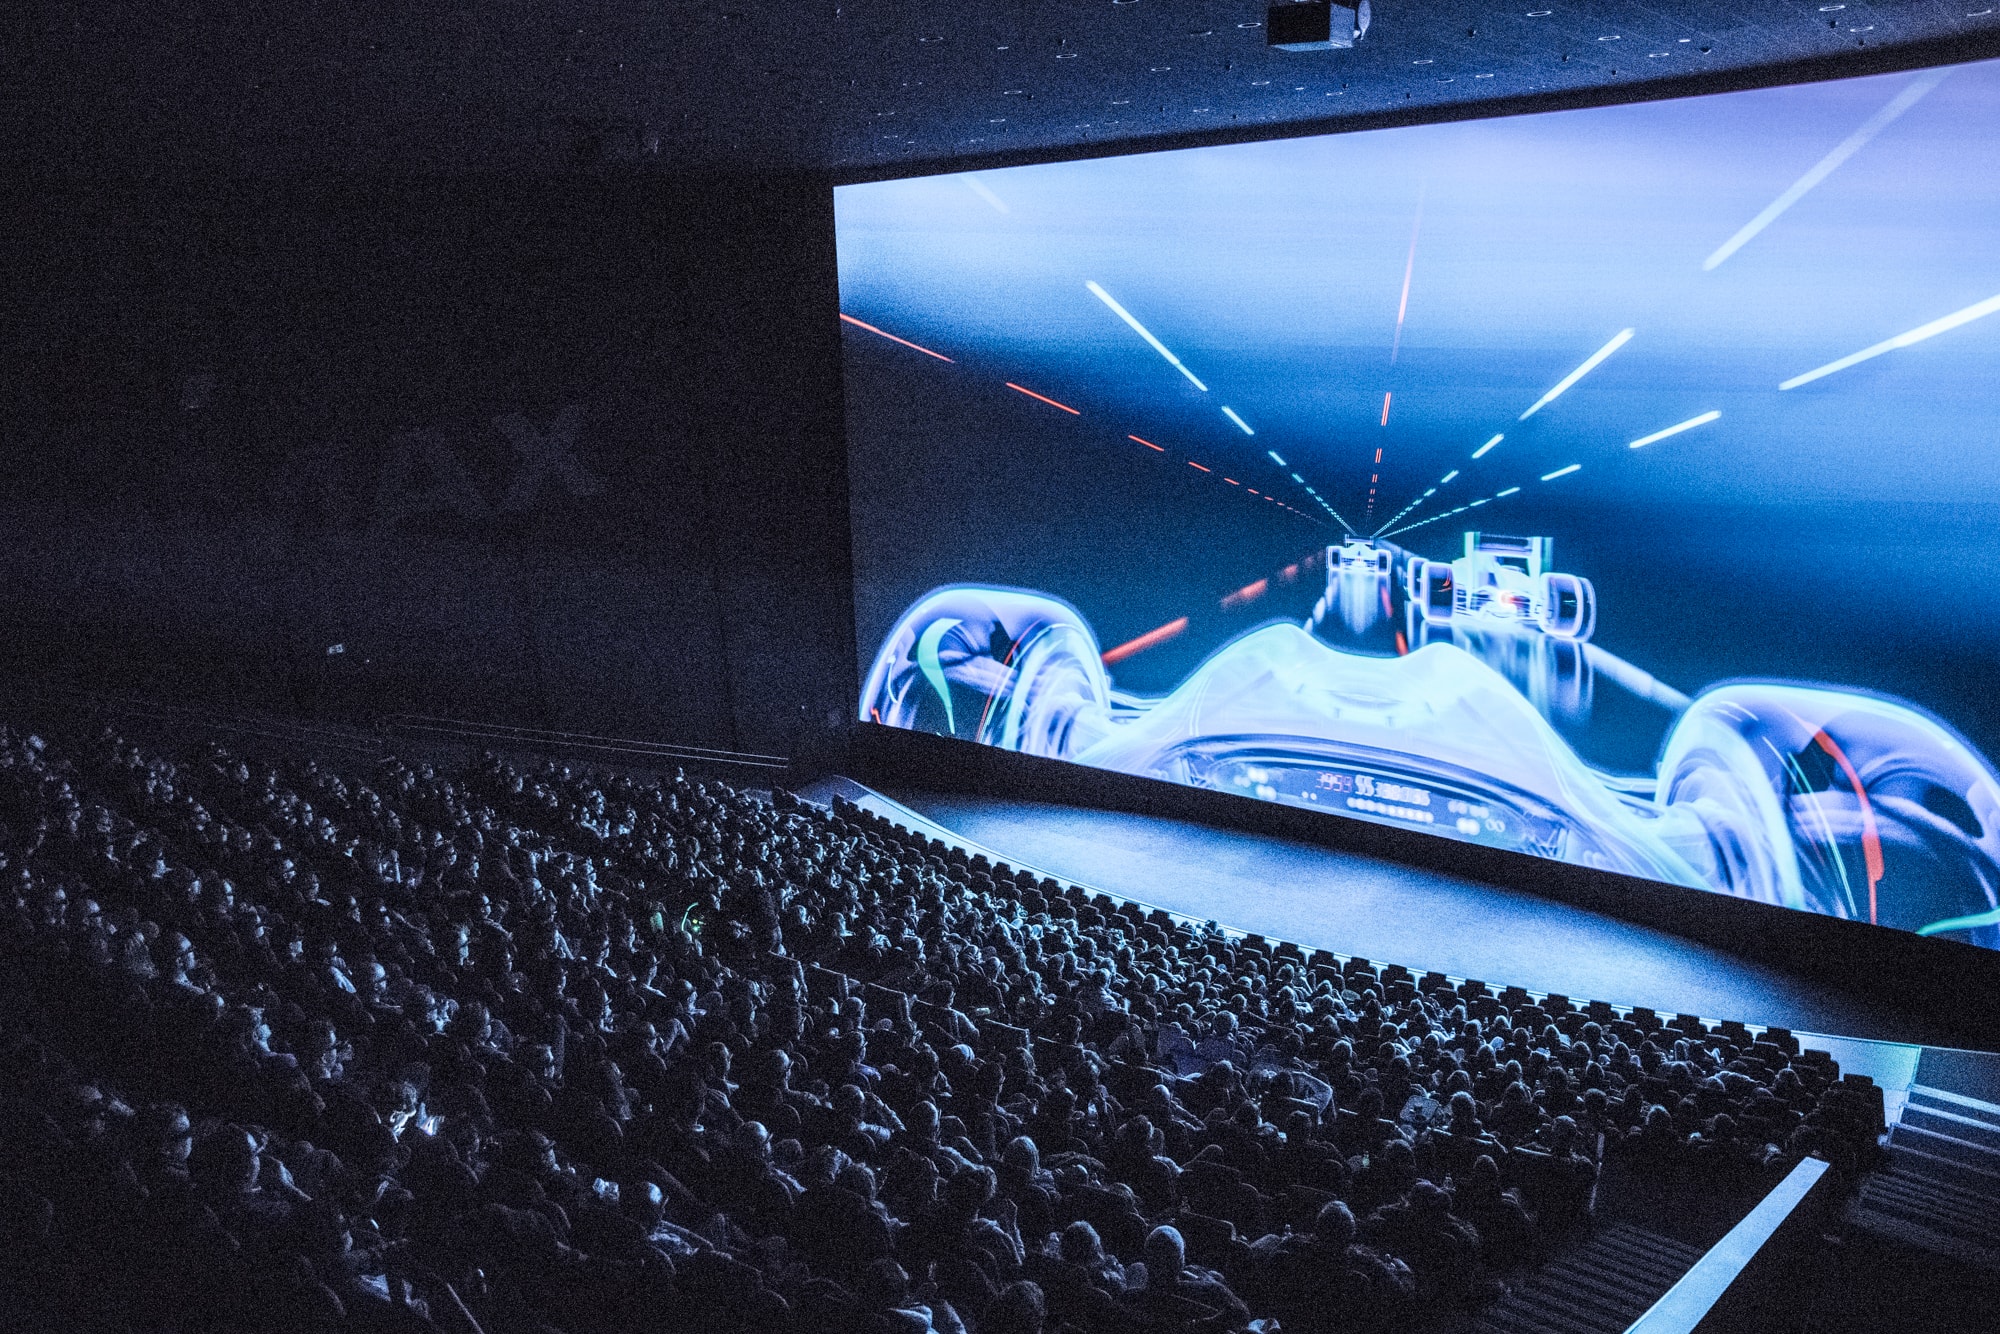 Opplev IMAX, iSense, ScreenX og LUXE hos ODEON Kino (10 av 11)